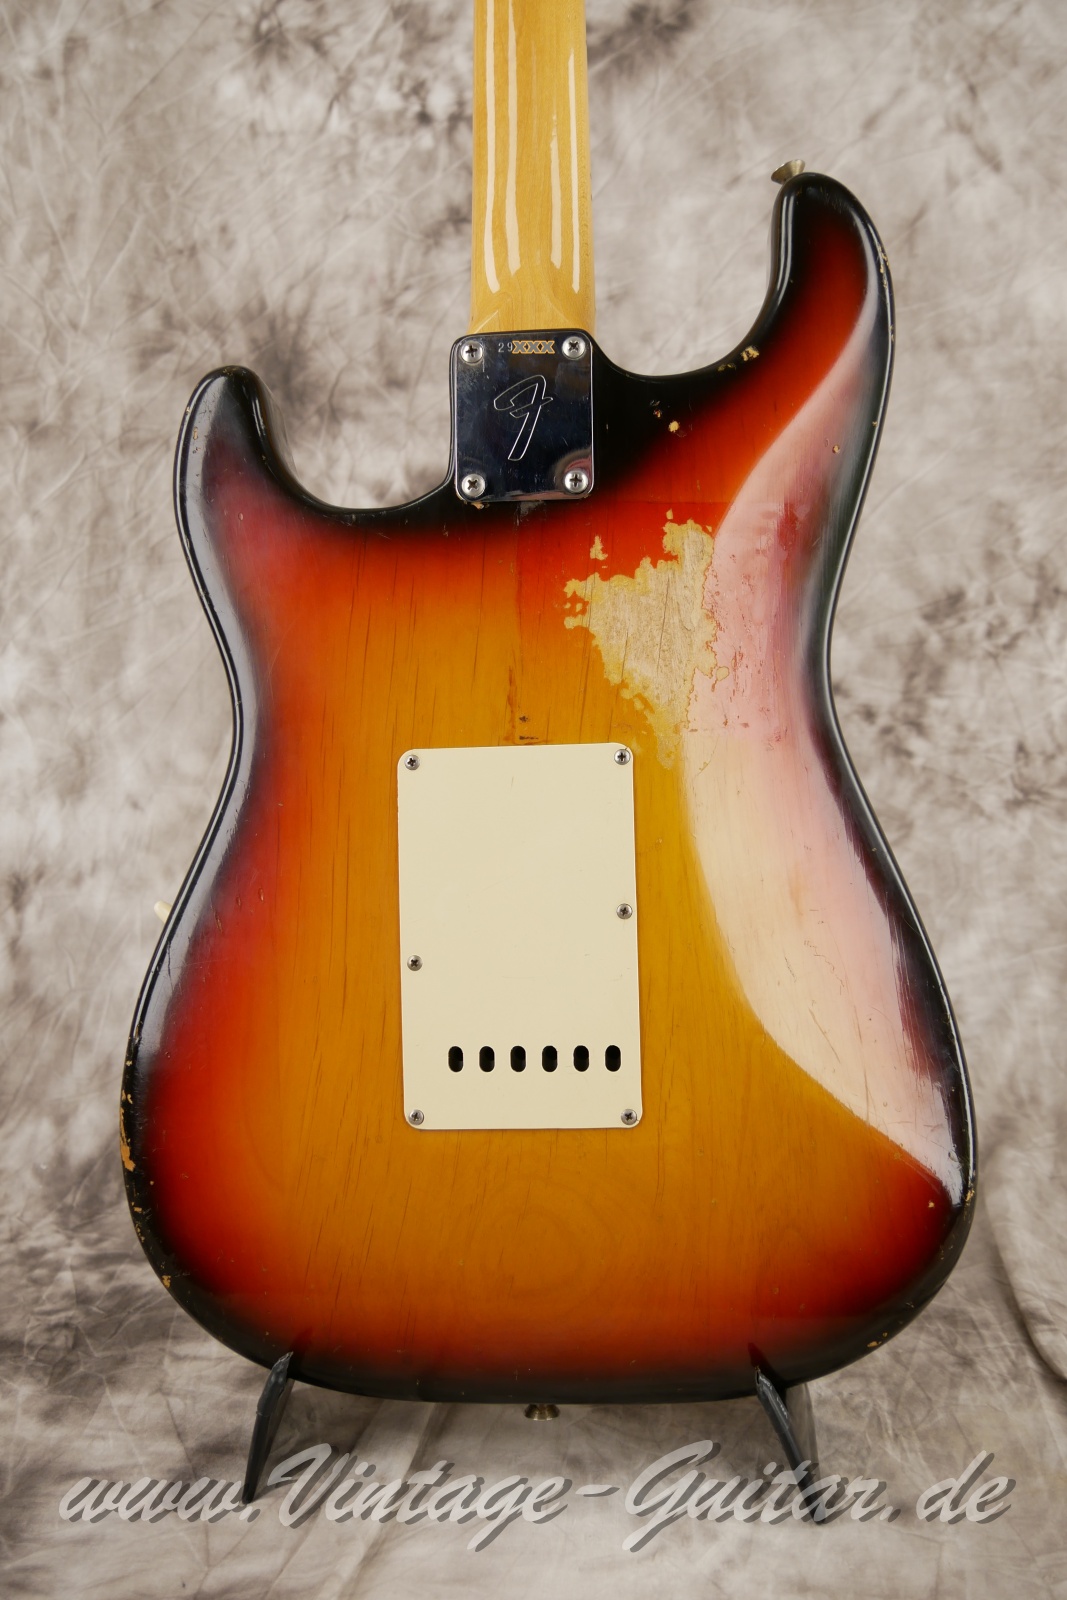 Fender_Stratocaster_sunburst_4hole_1971-008.JPG